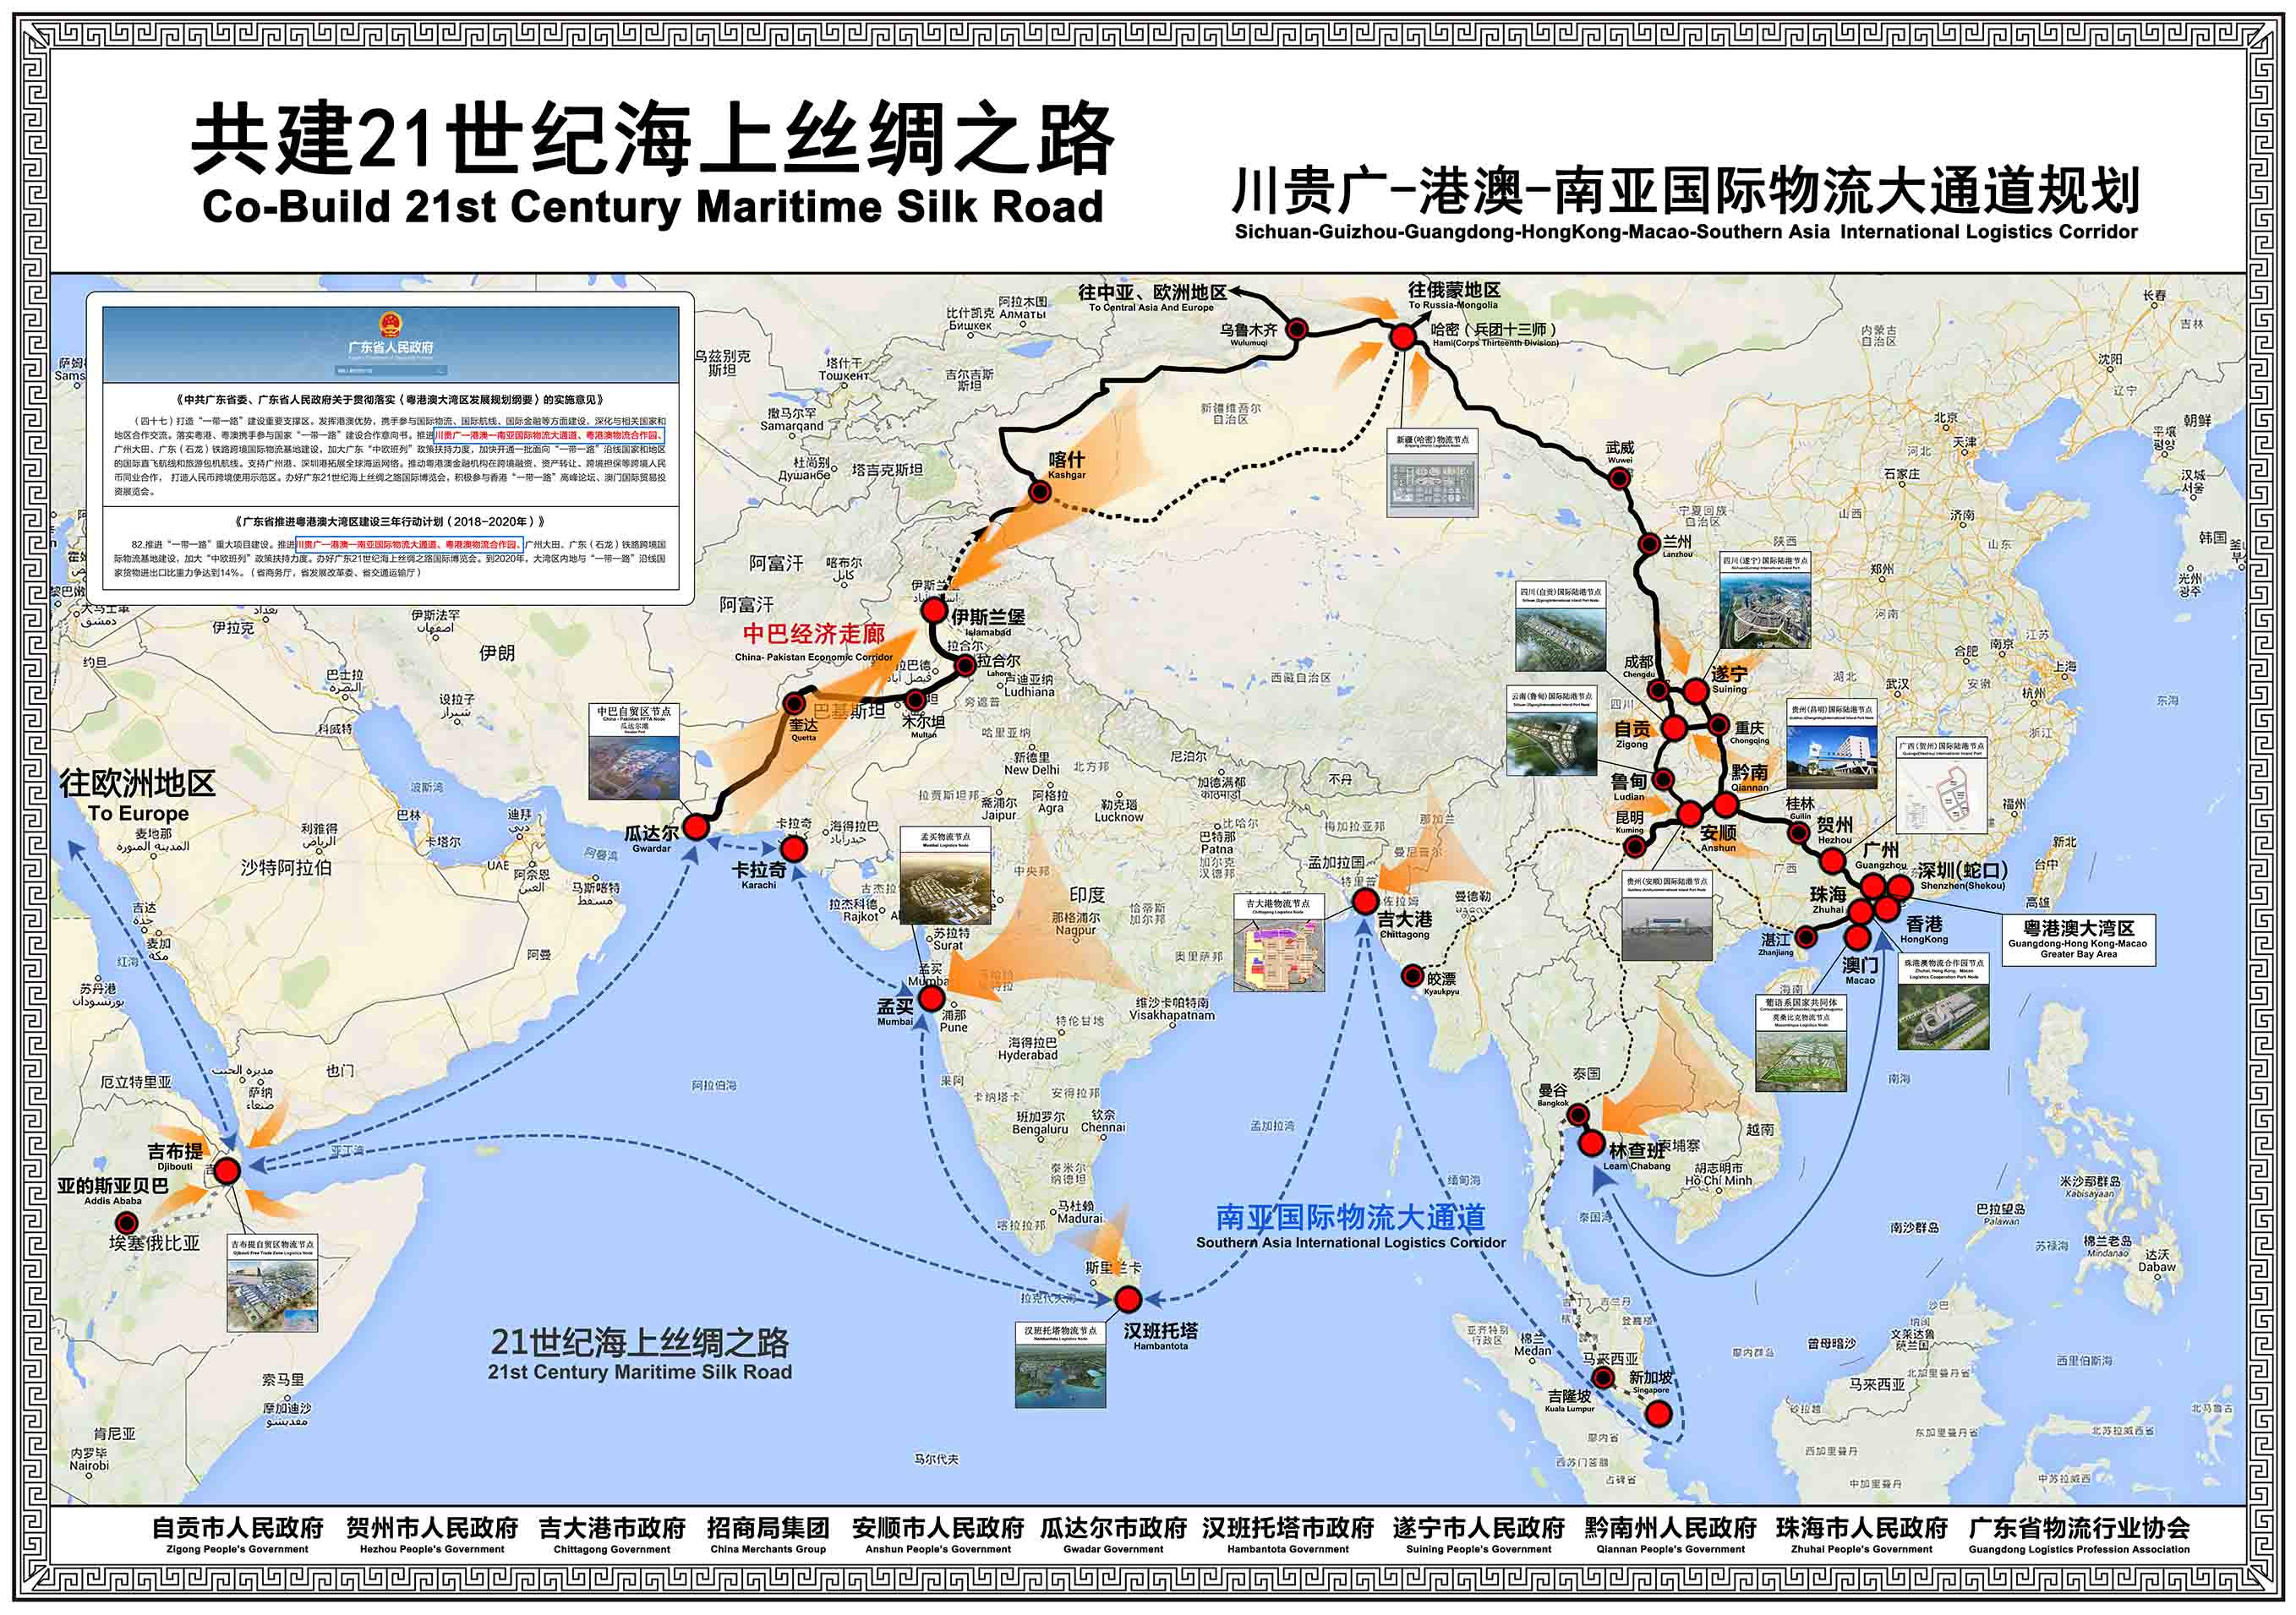 川贵广-港澳-南亚国际物流大通道规划